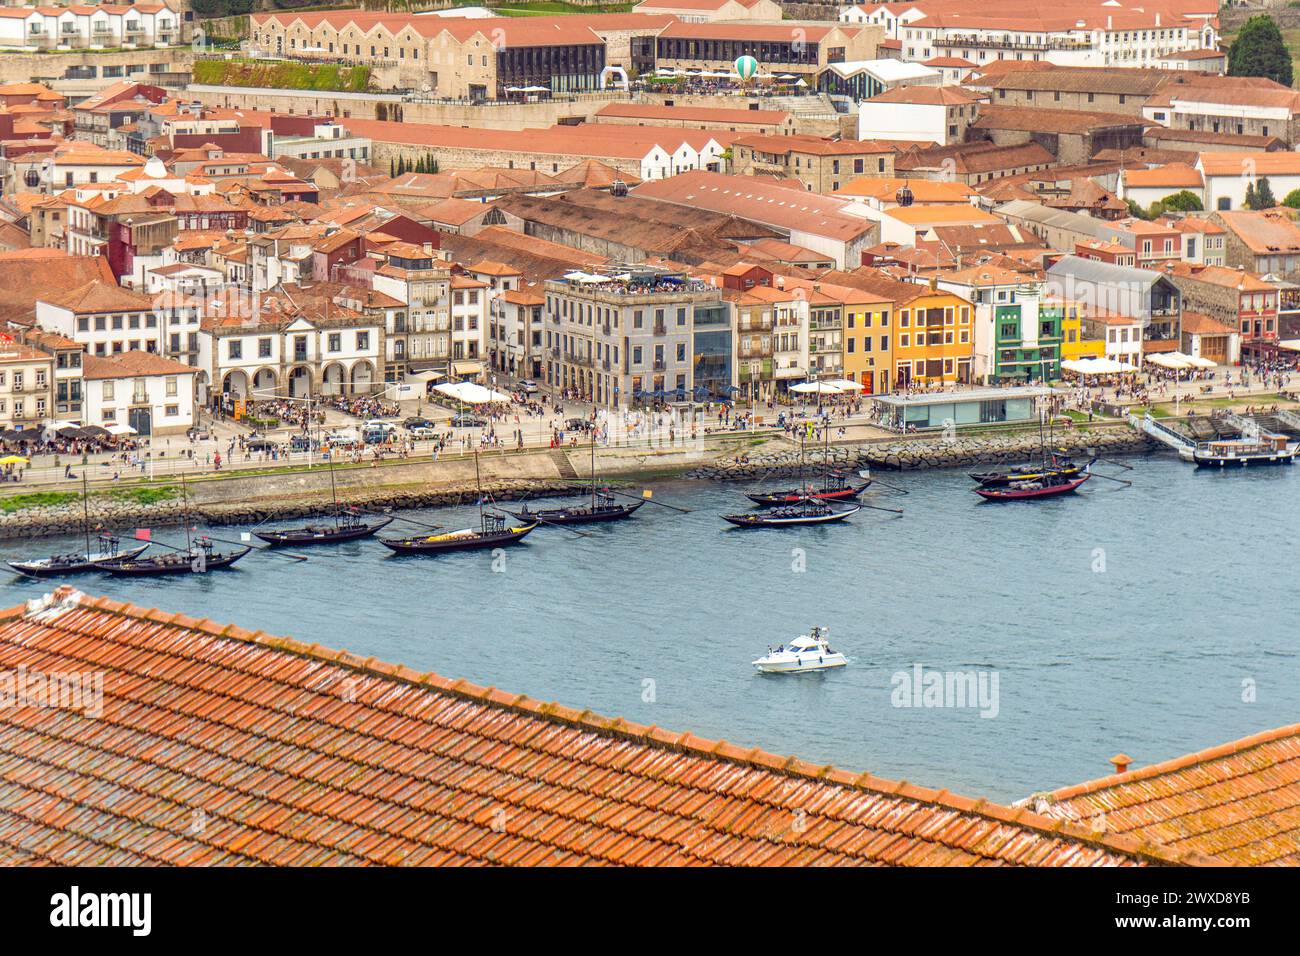 Aus der Vogelperspektive auf den Fluss Douro und die Promenade von Porto mit den Rabelas, klassischen Booten für Touristenrouten der 6 Brücken. Restaurants und Touristen Stockfoto